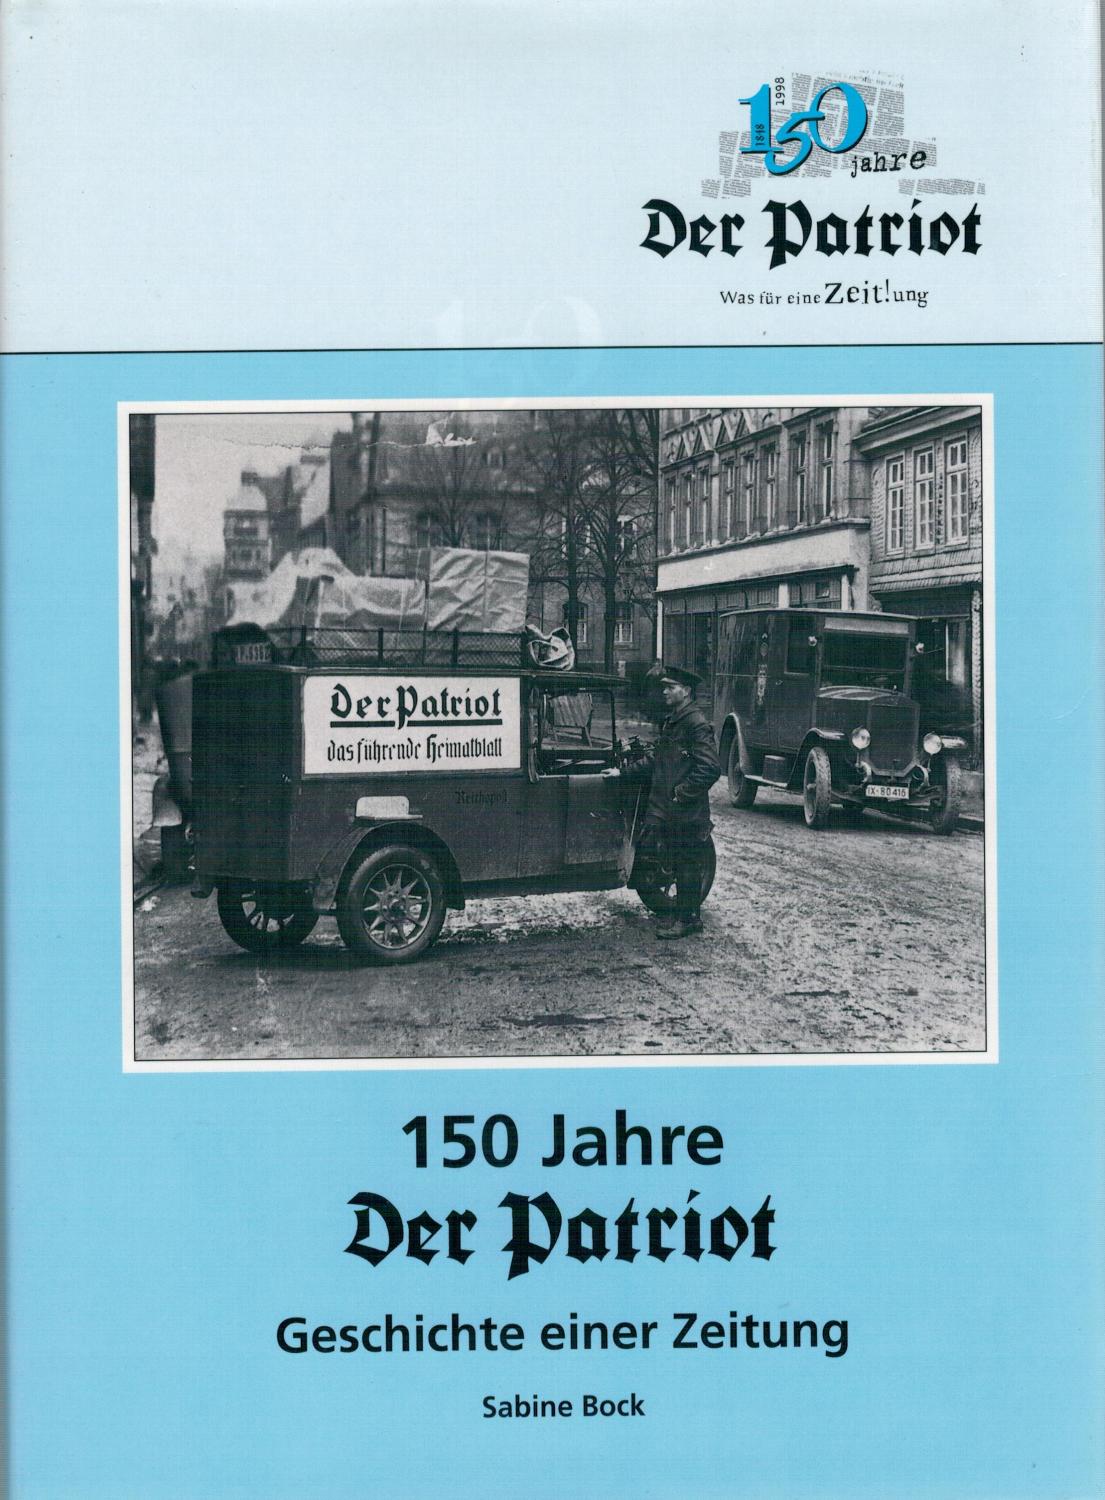 150 Jahre DER PATRIOT - Geschichte einer Zeitung - Bock, Sabine